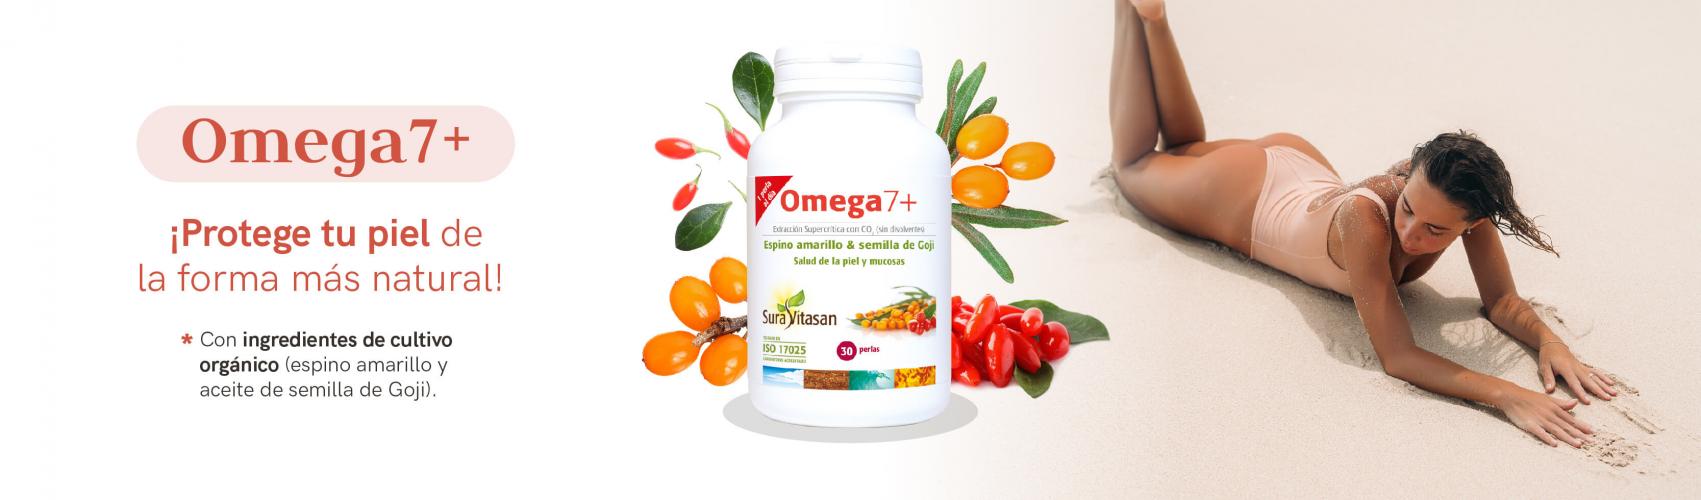 Omega7+